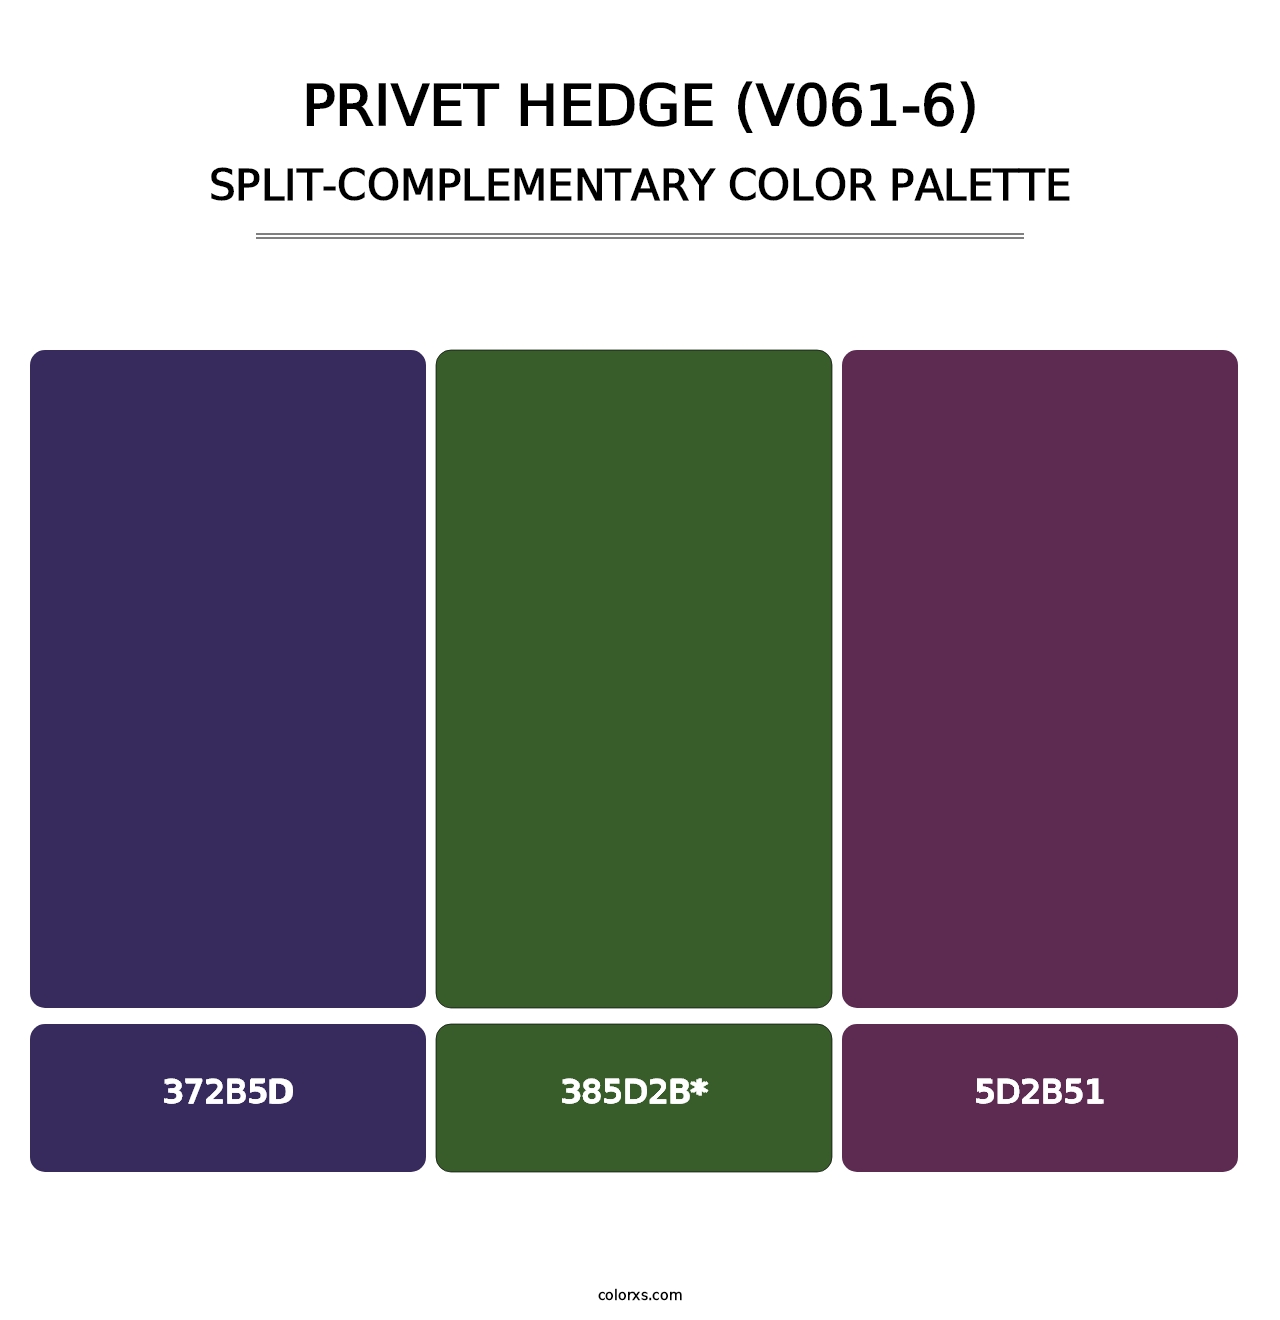 Privet Hedge (V061-6) - Split-Complementary Color Palette